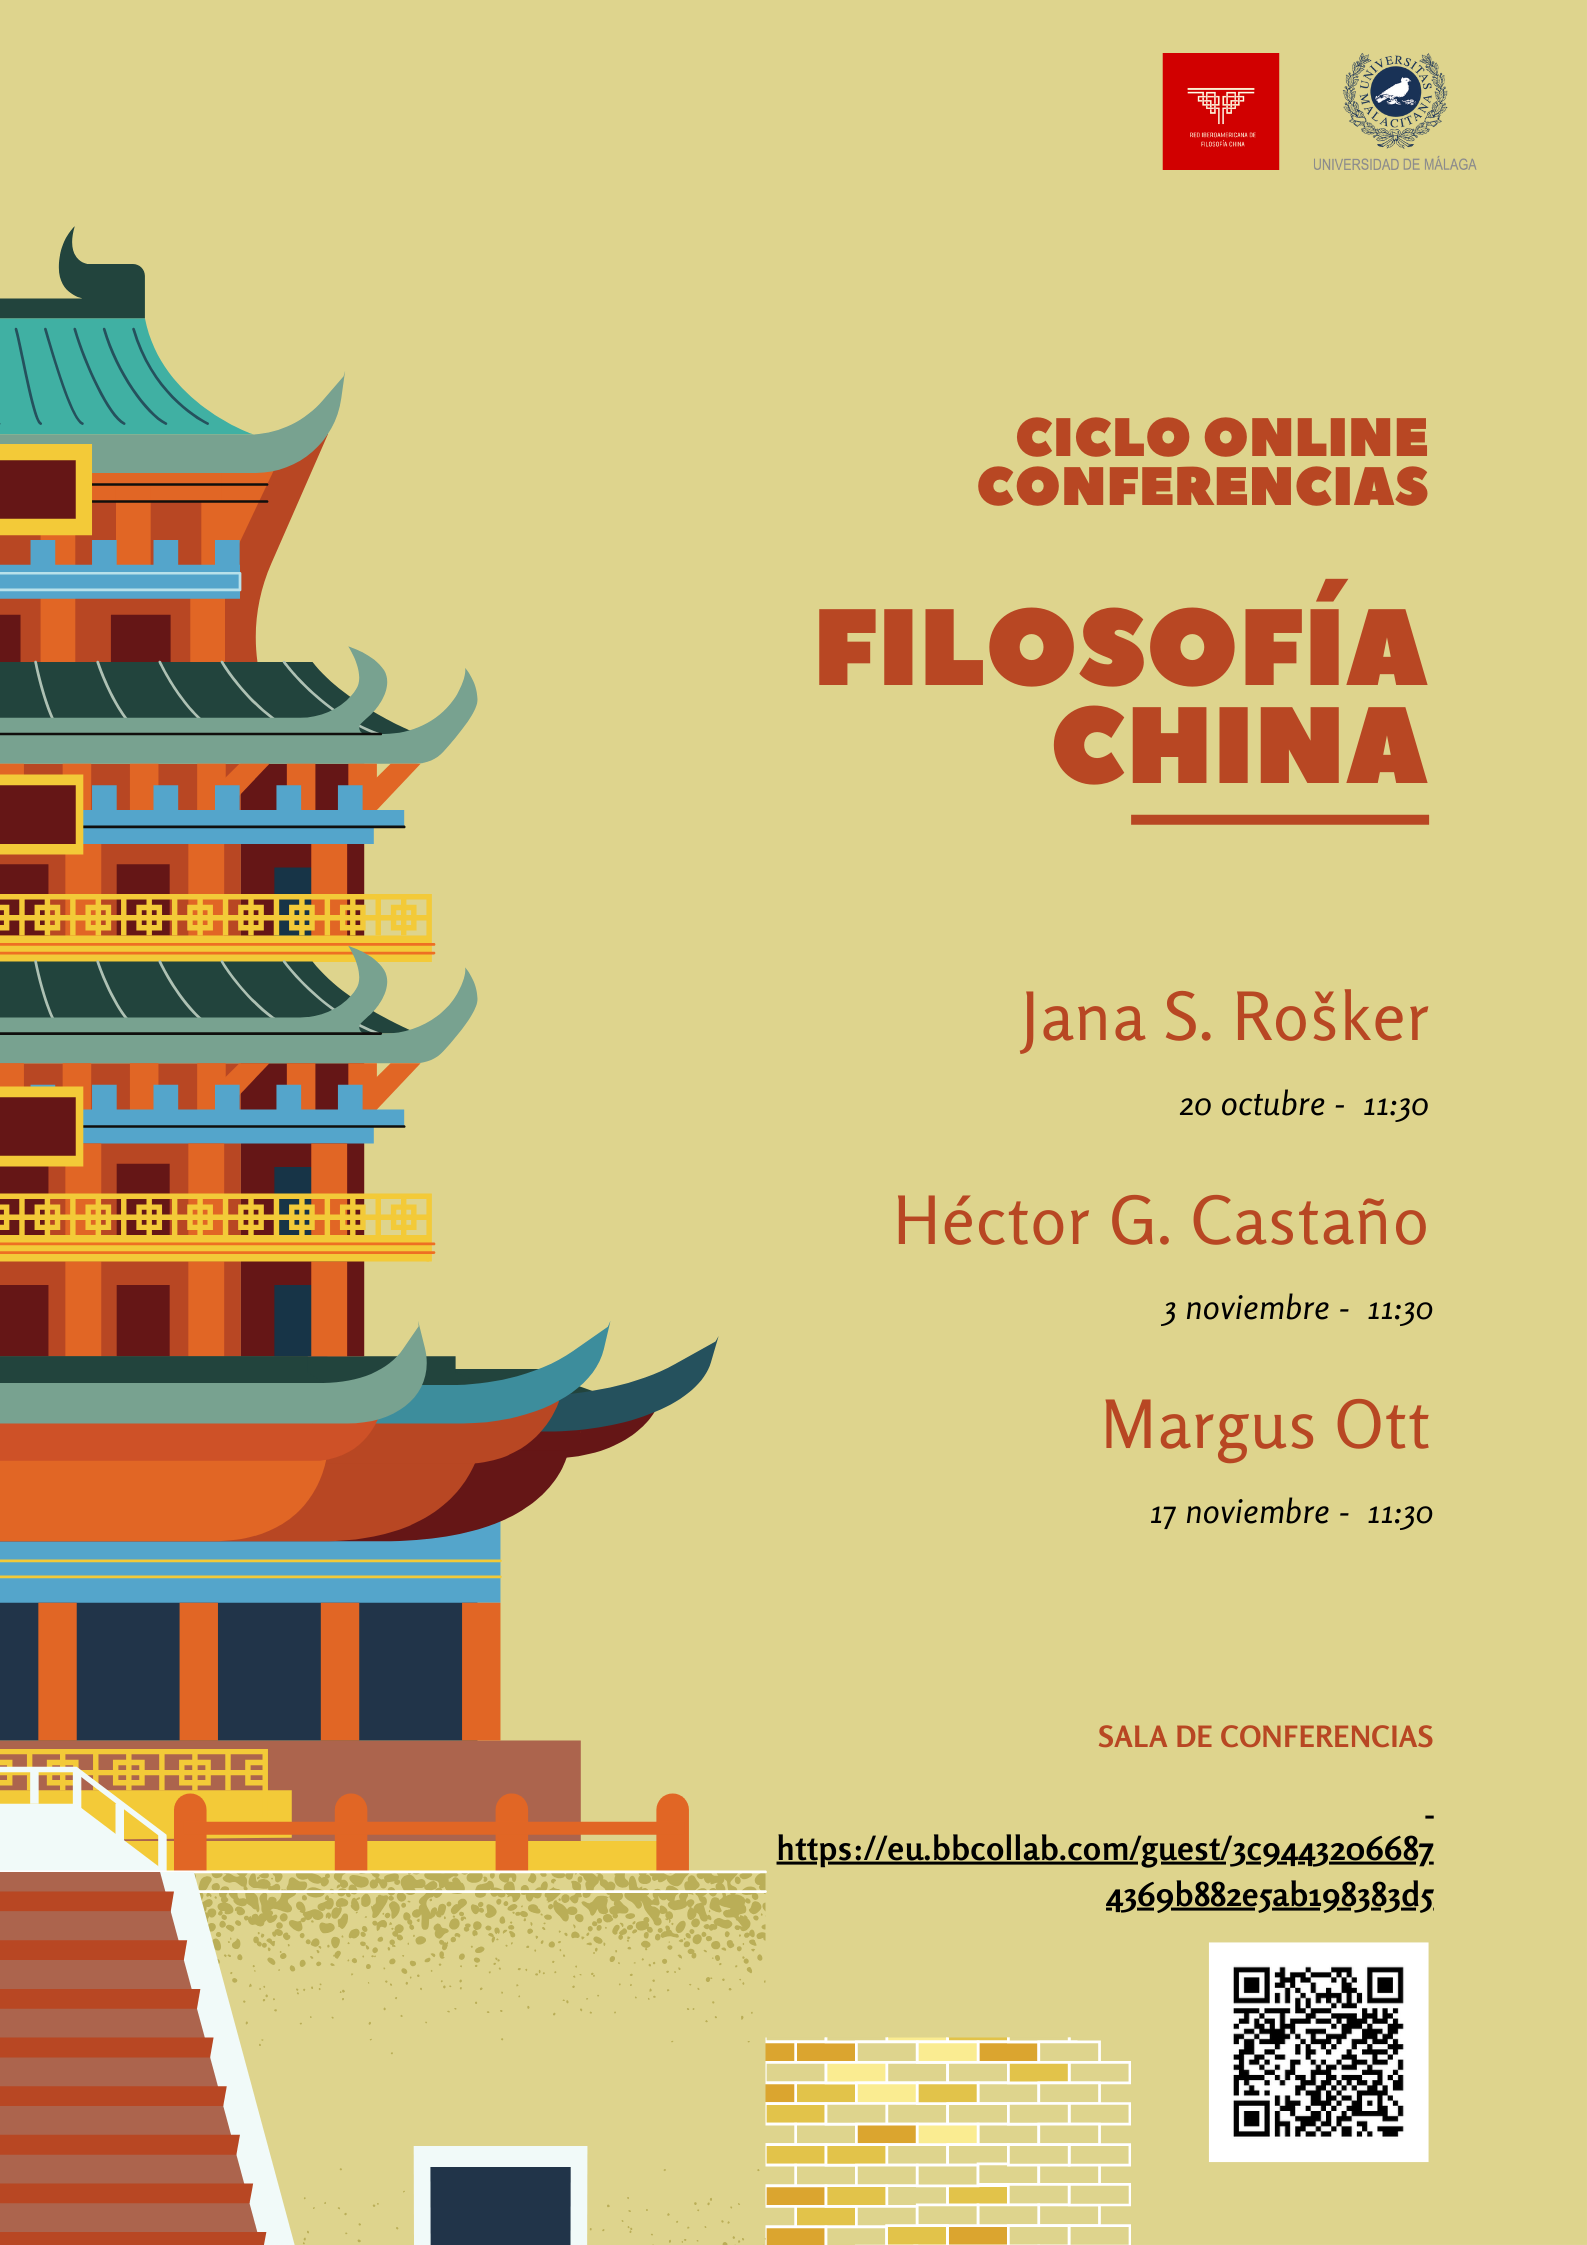 Ciclo De Conferencias Online Sobre Filosofía China